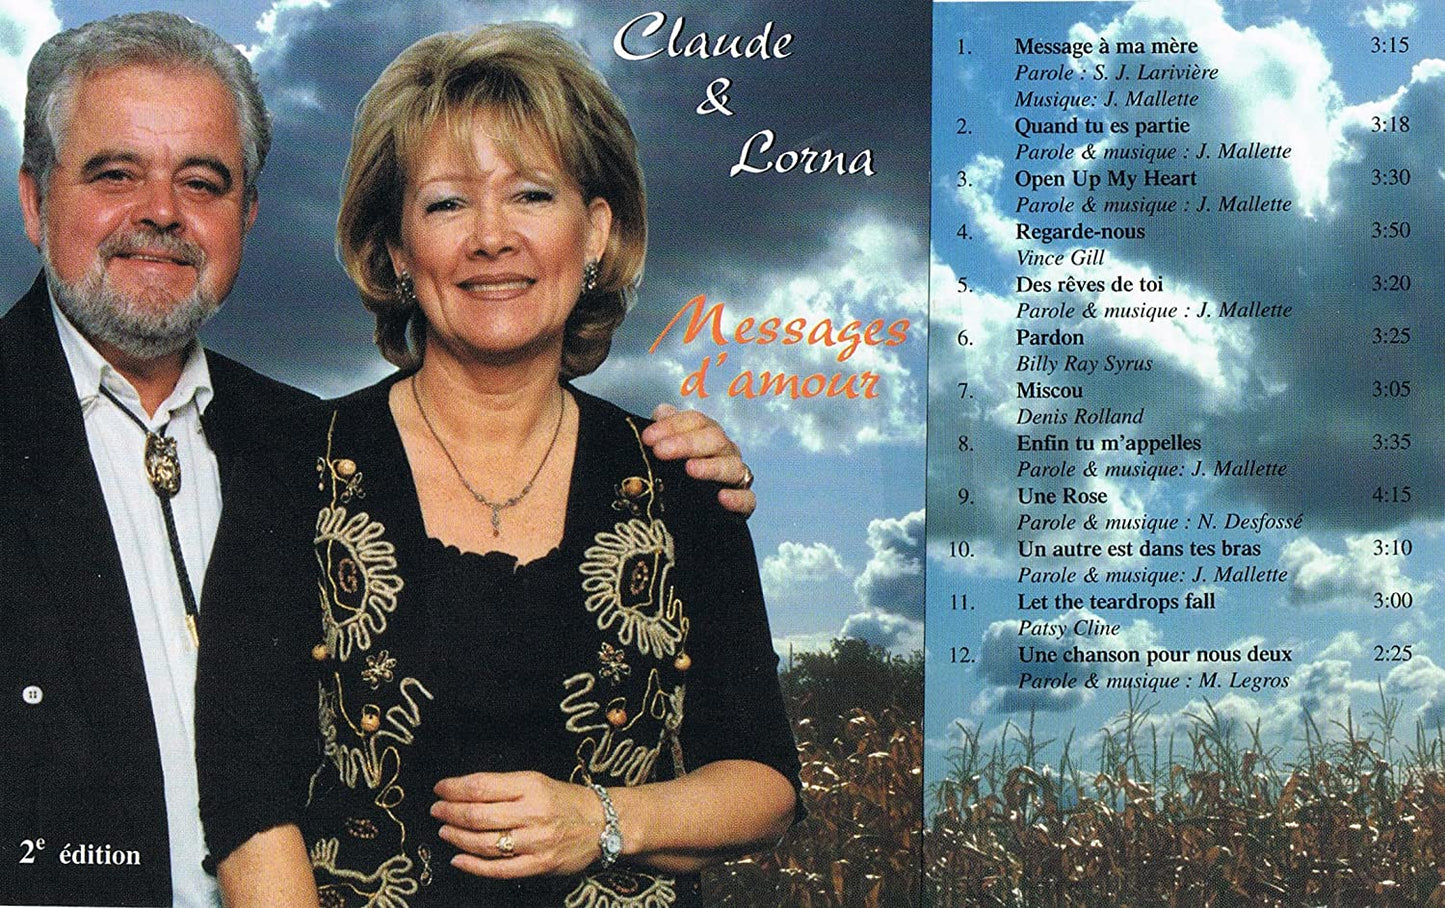 Messages D'amour/ 2ieme Edition [Audio CD] Claude et Lorna